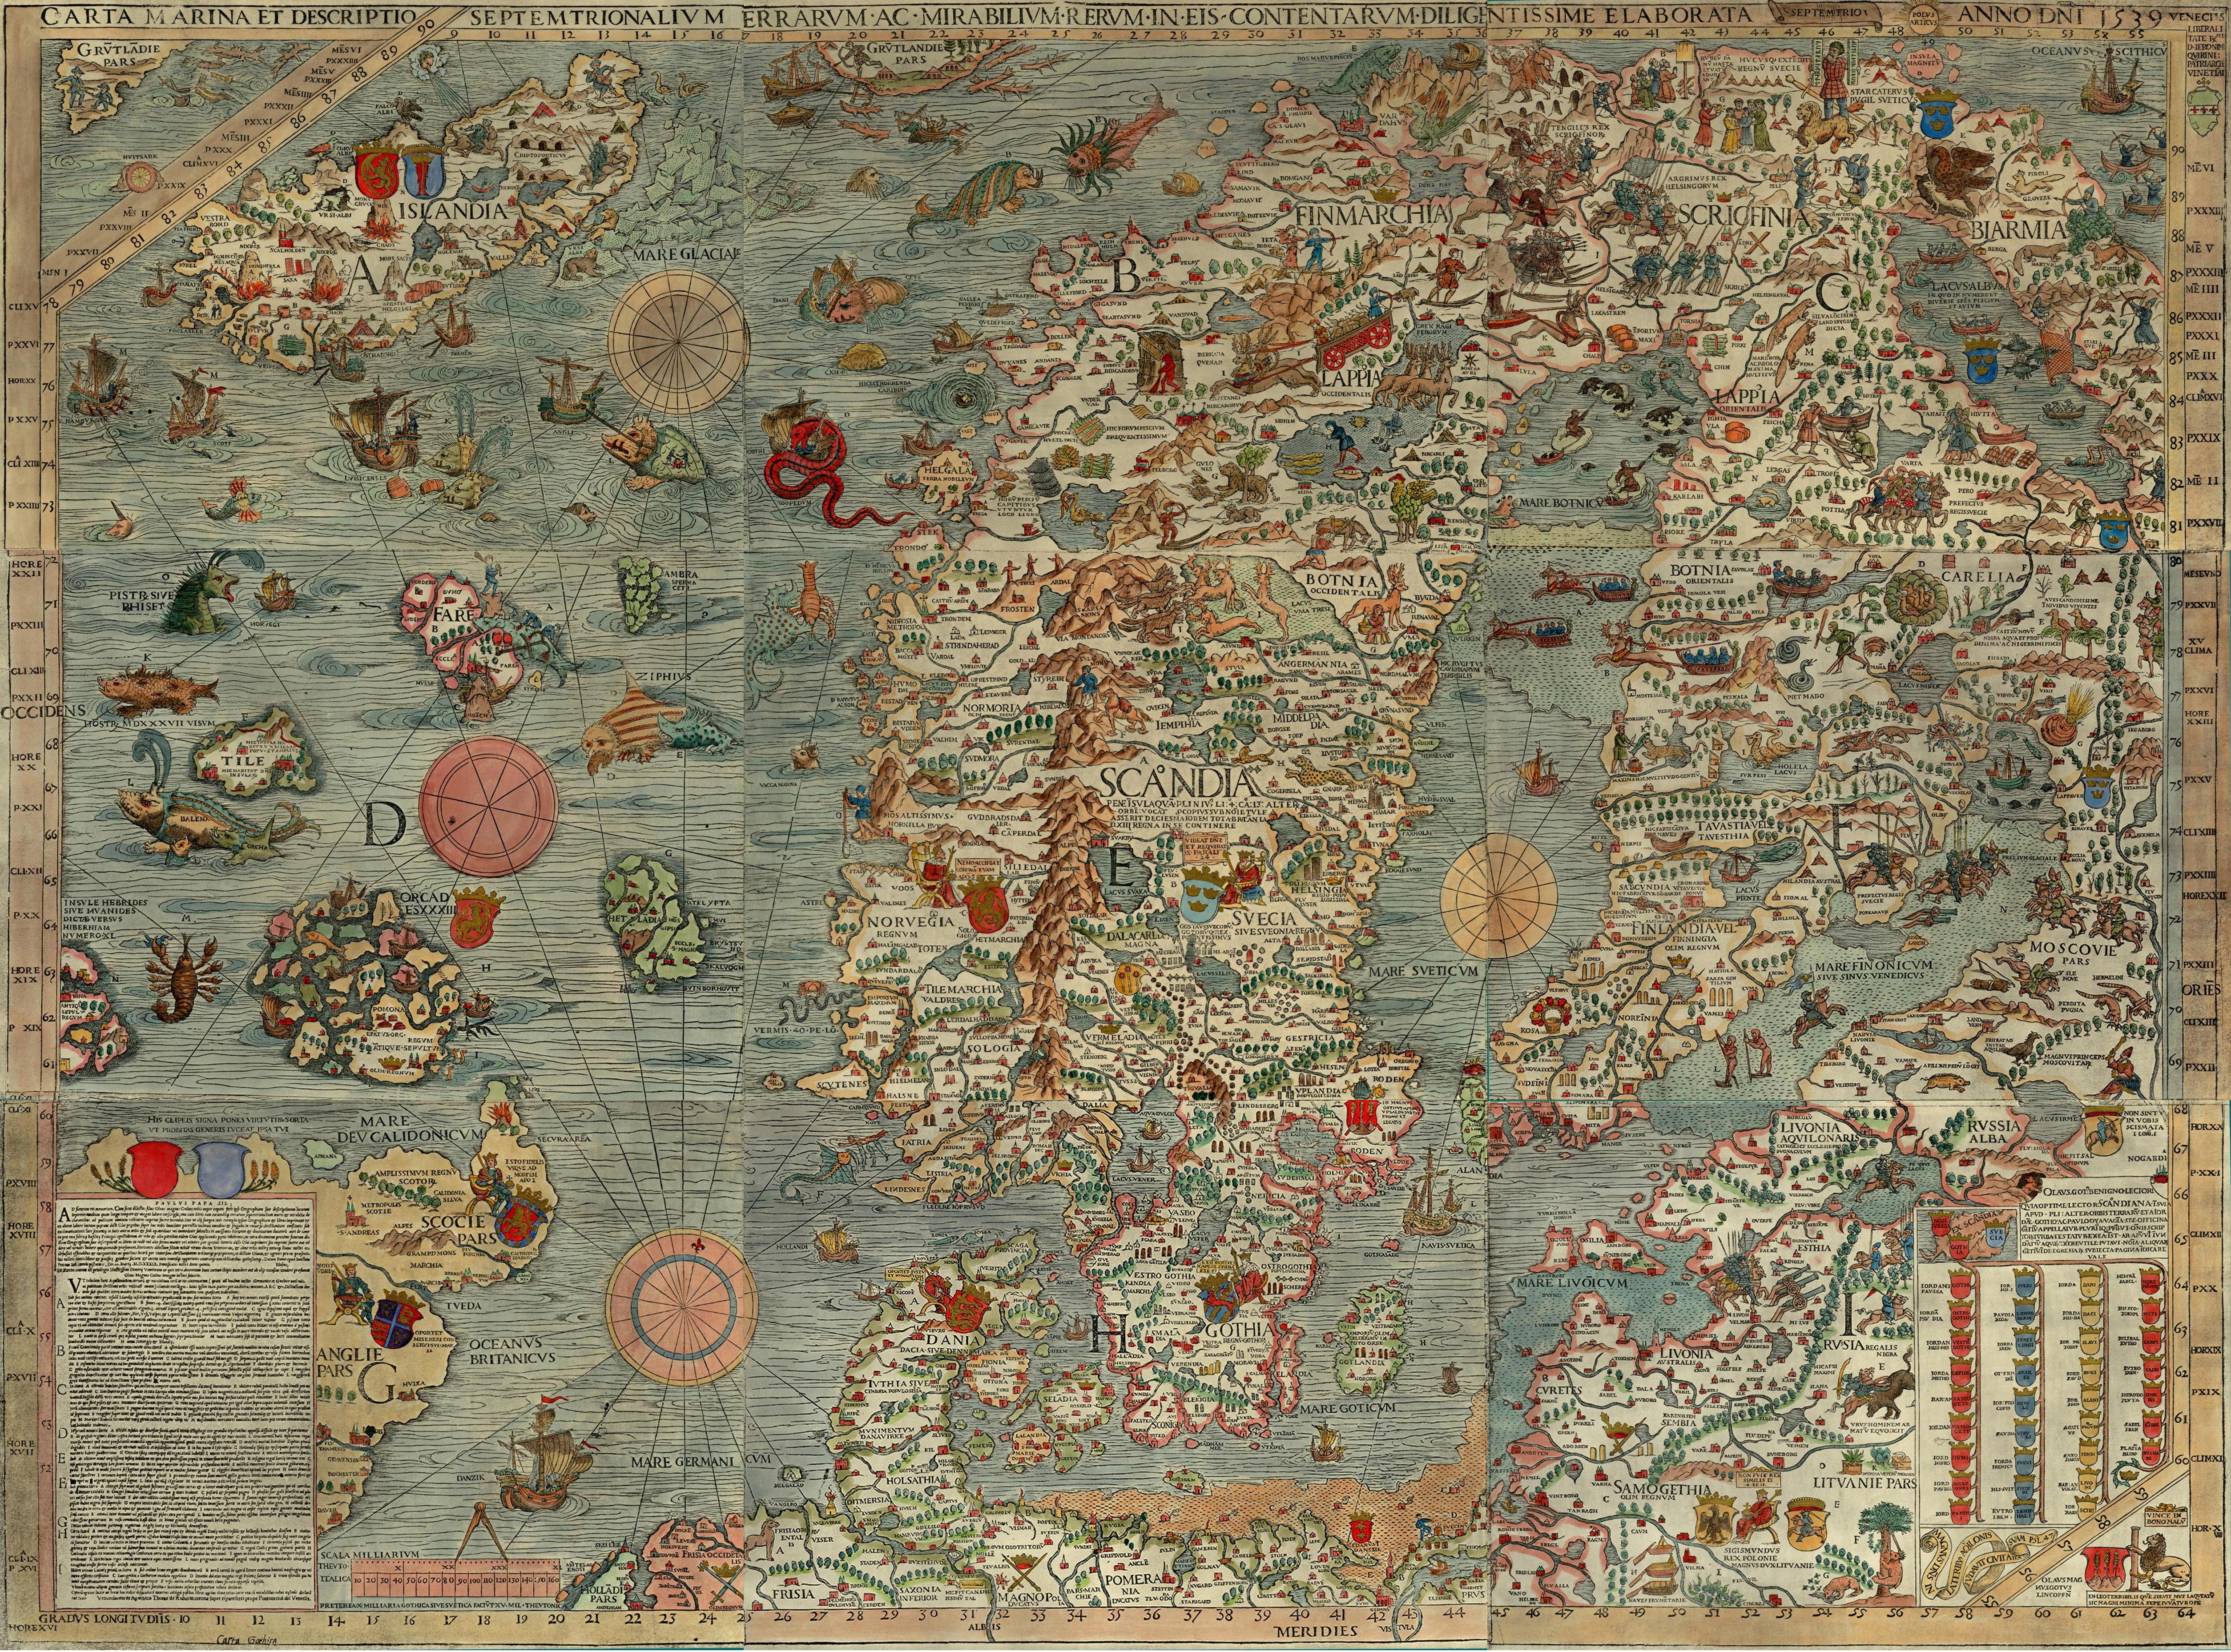 Det gamle sjøkarte Carta Marina med illustrert med alt mulig av ekte og mytiske dyr fra havet.